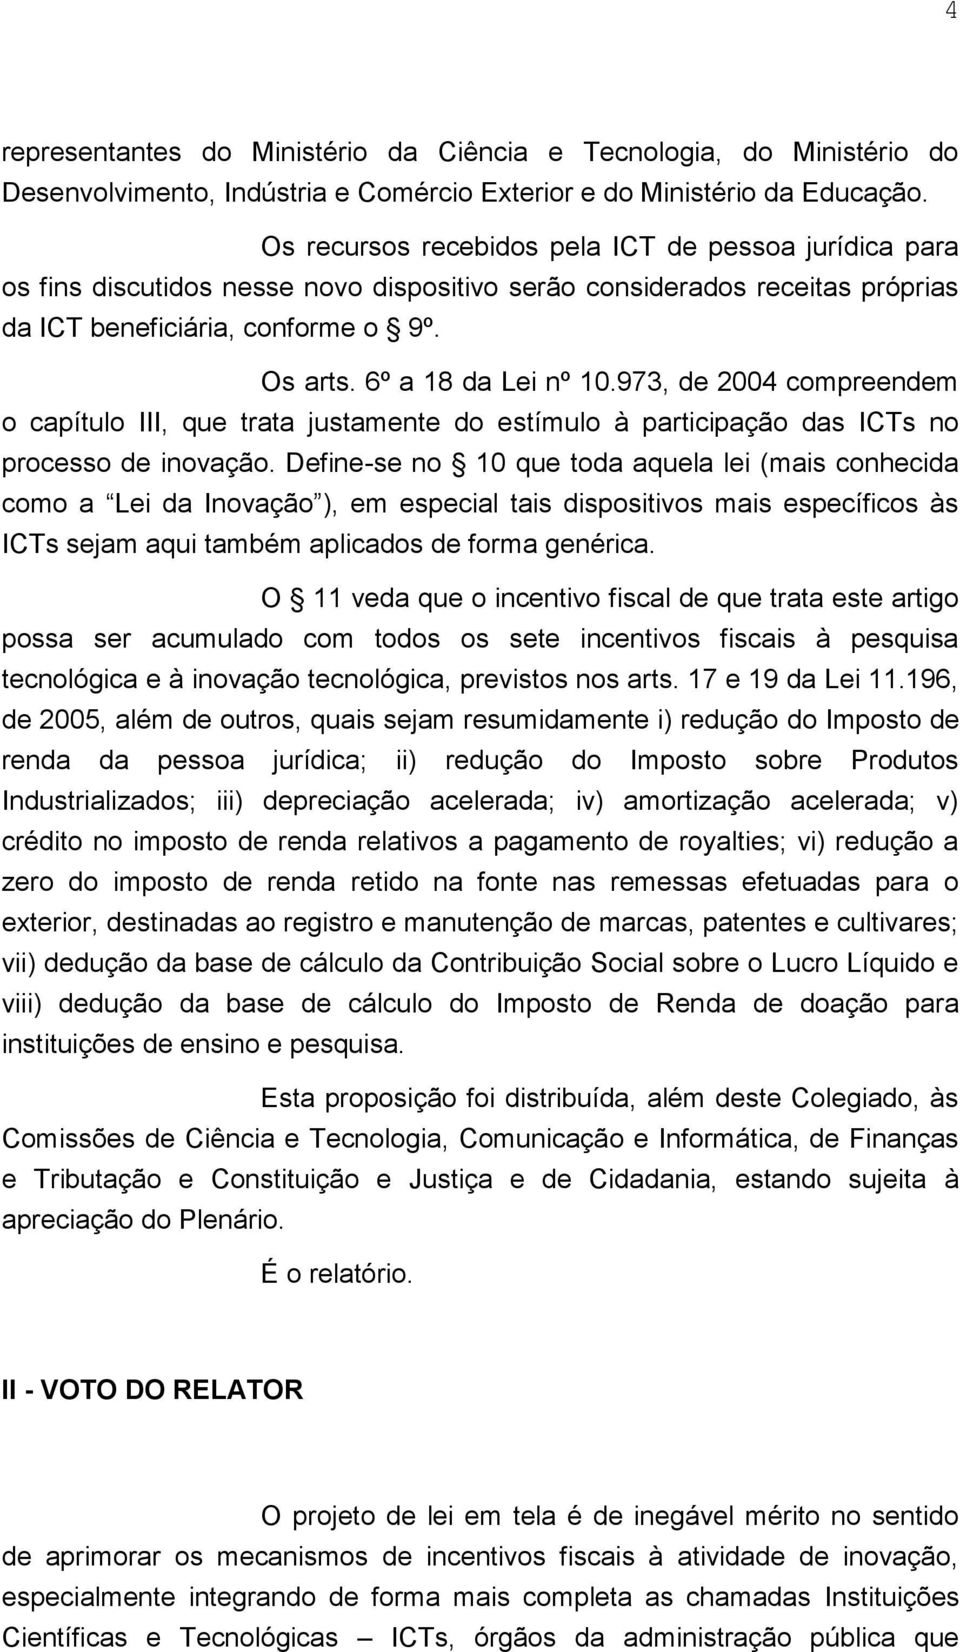 973, de 2004 compreendem o capítulo III, que trata justamente do estímulo à participação das ICTs no processo de inovação.